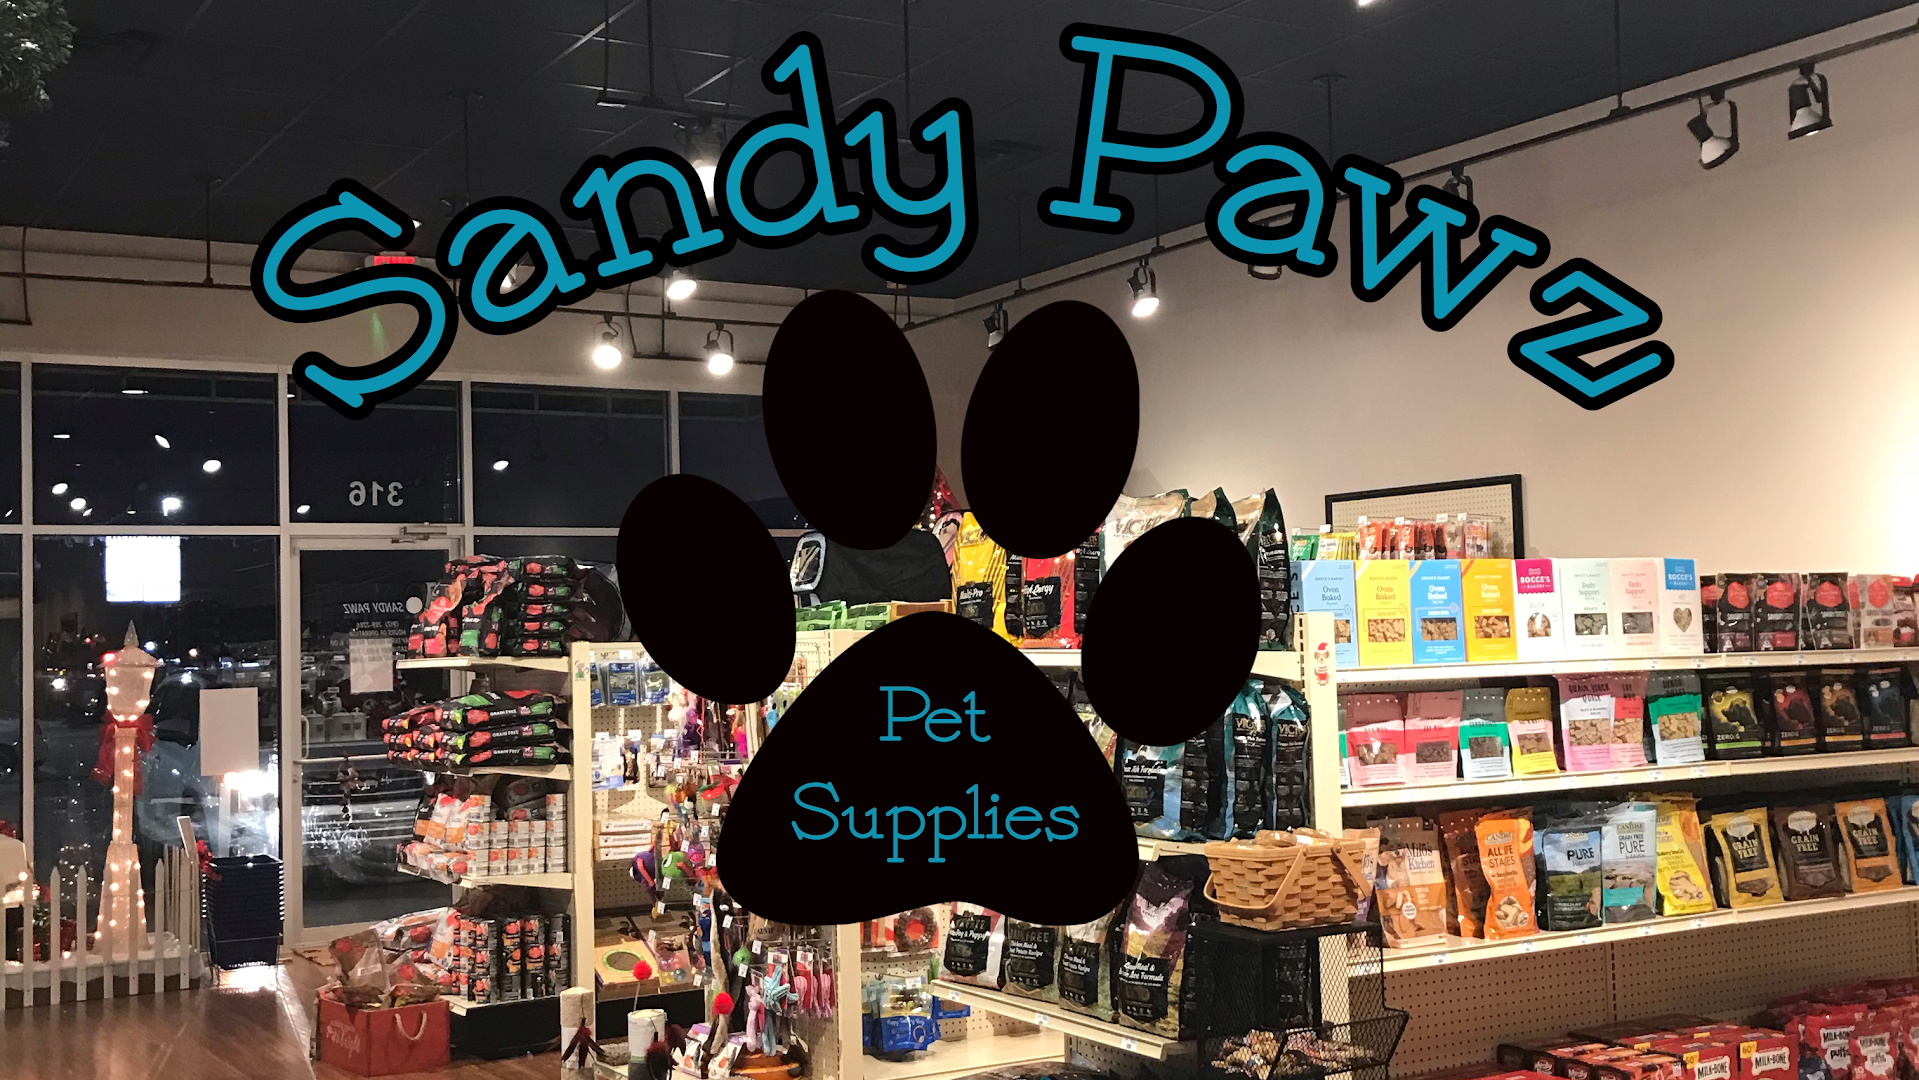 Sandy Pawz Pet Supply